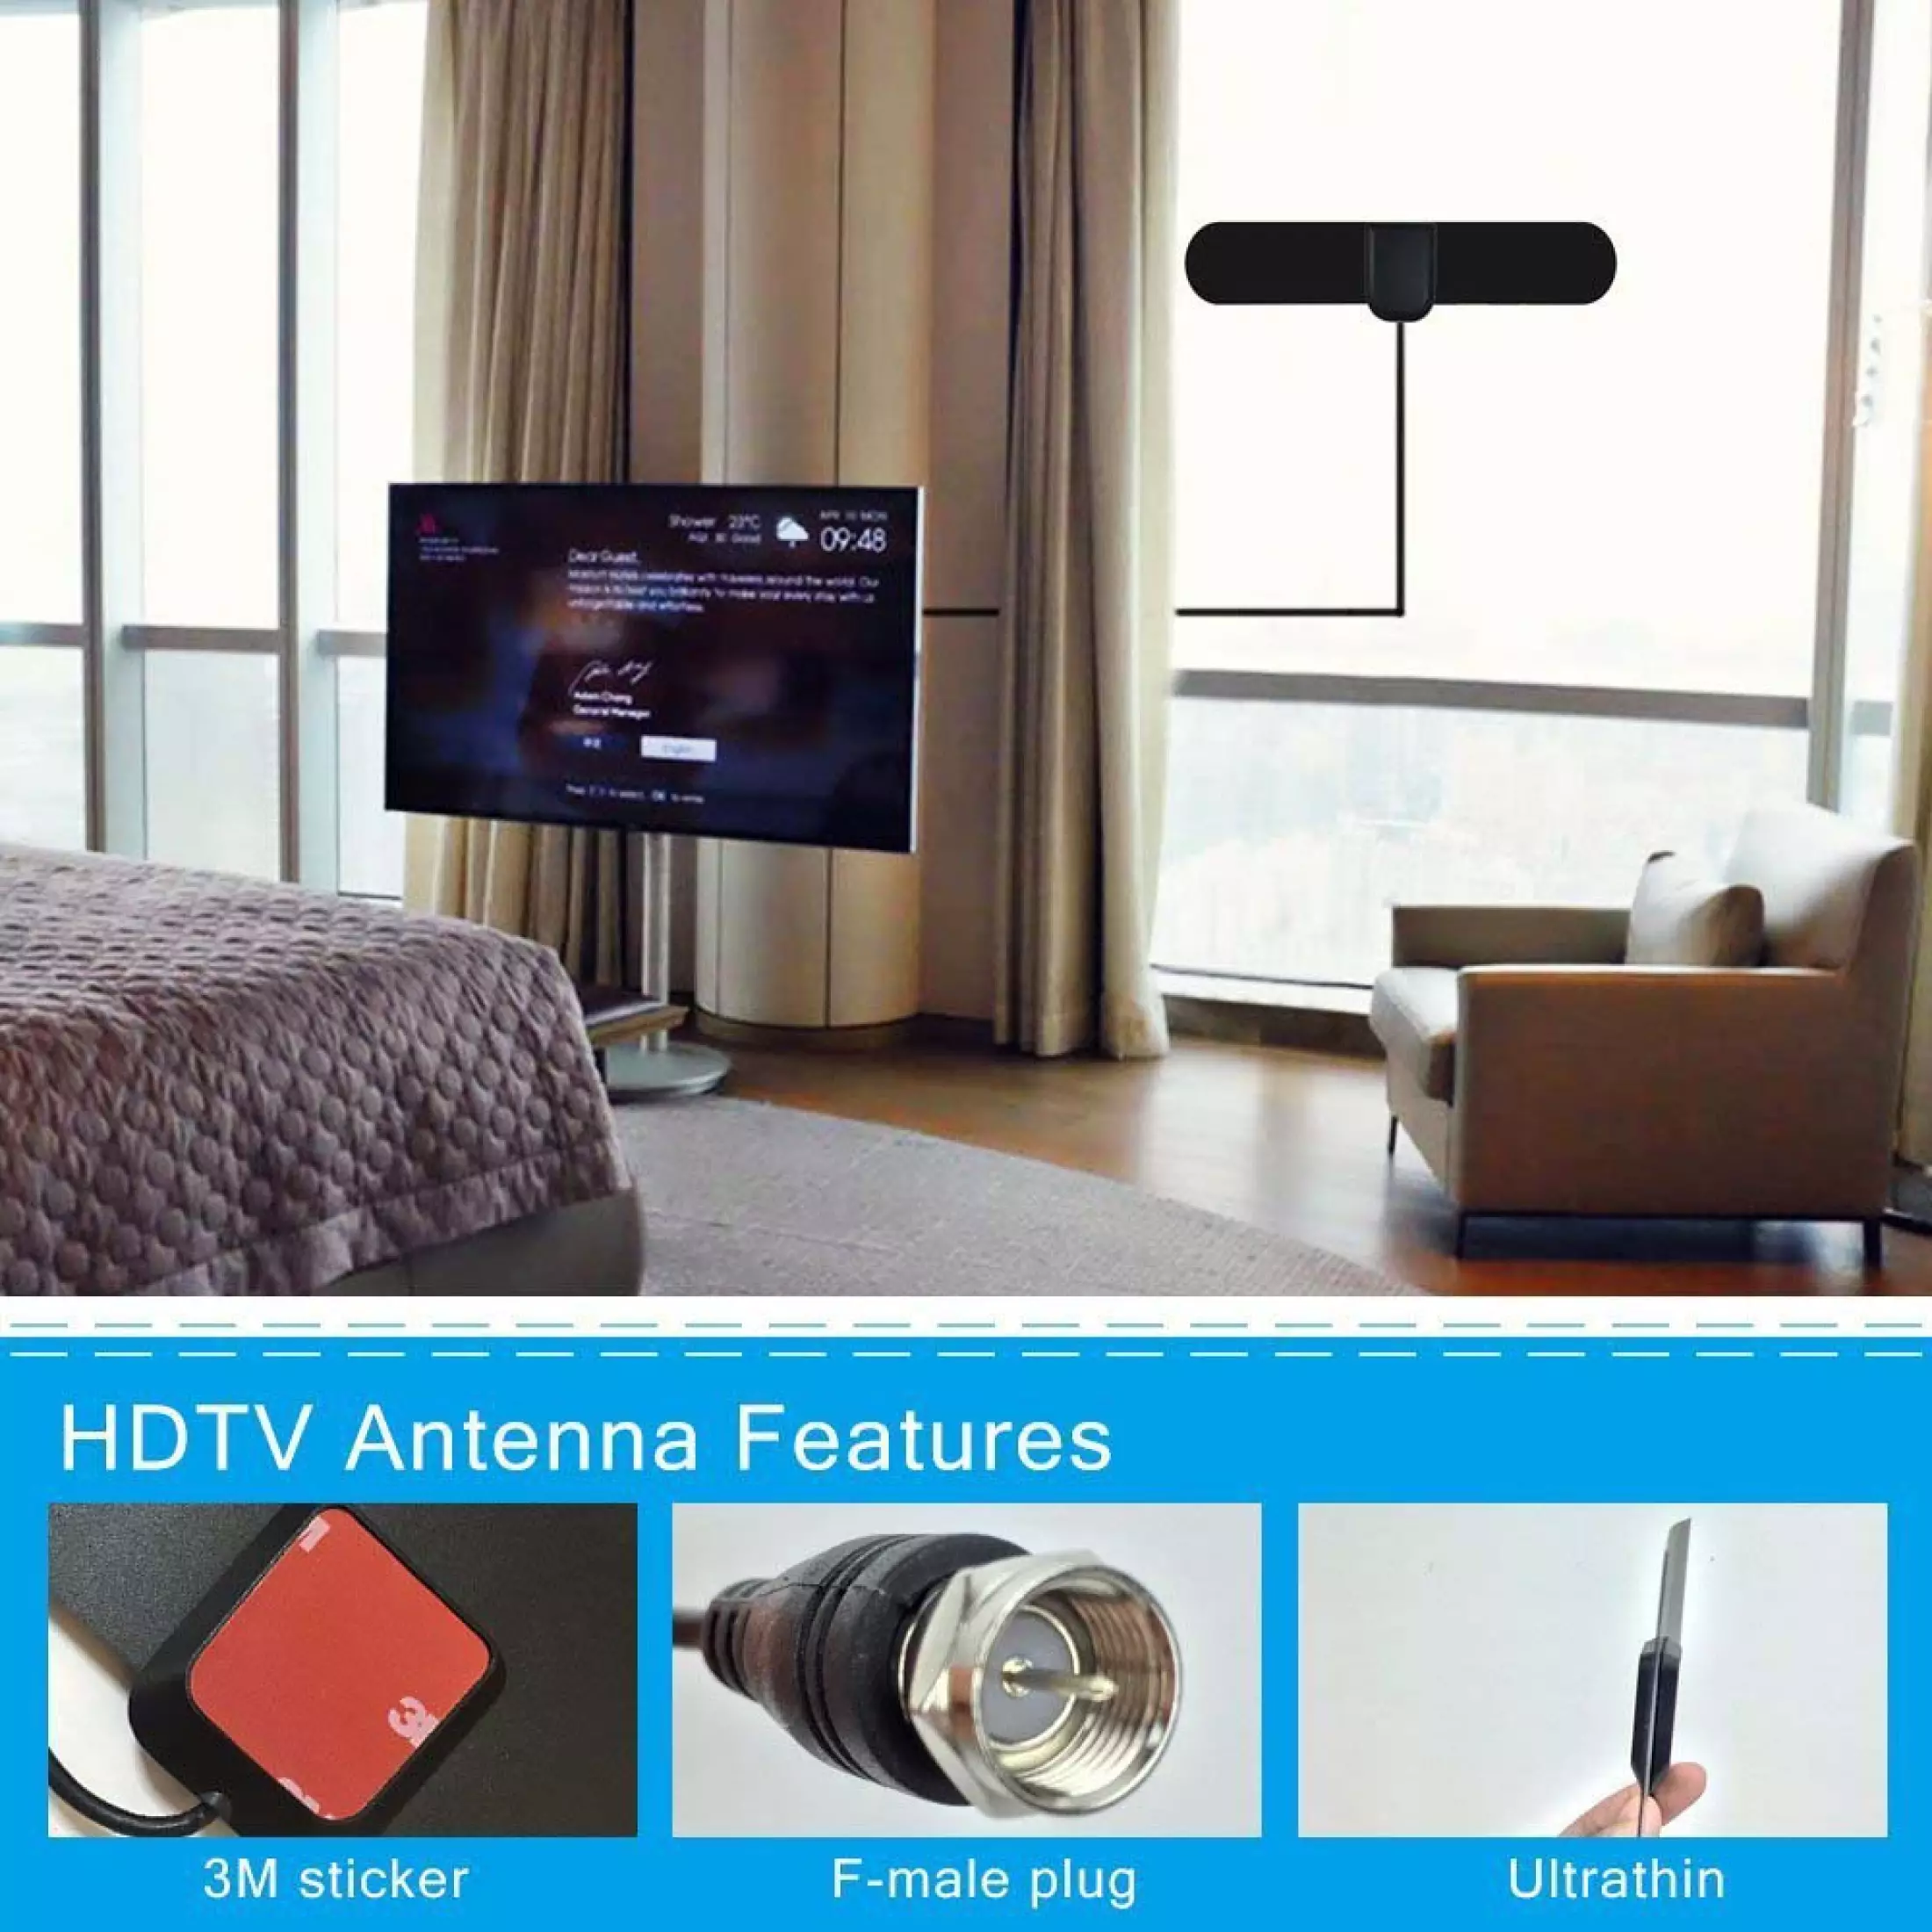 คำอธิบายเพิ่มเติมเกี่ยวกับ MEKKE เสาอากาศ เสาอากาศทีวี เสาอากาศดิจิตอลทีวี เสาอากาศทีวีดิจิตอล Antennas HD 1080P Digital TV Antenna เสารับสัญญาณดิจิตอล Indoor Powerful HD TV Amplifier Signal Booster